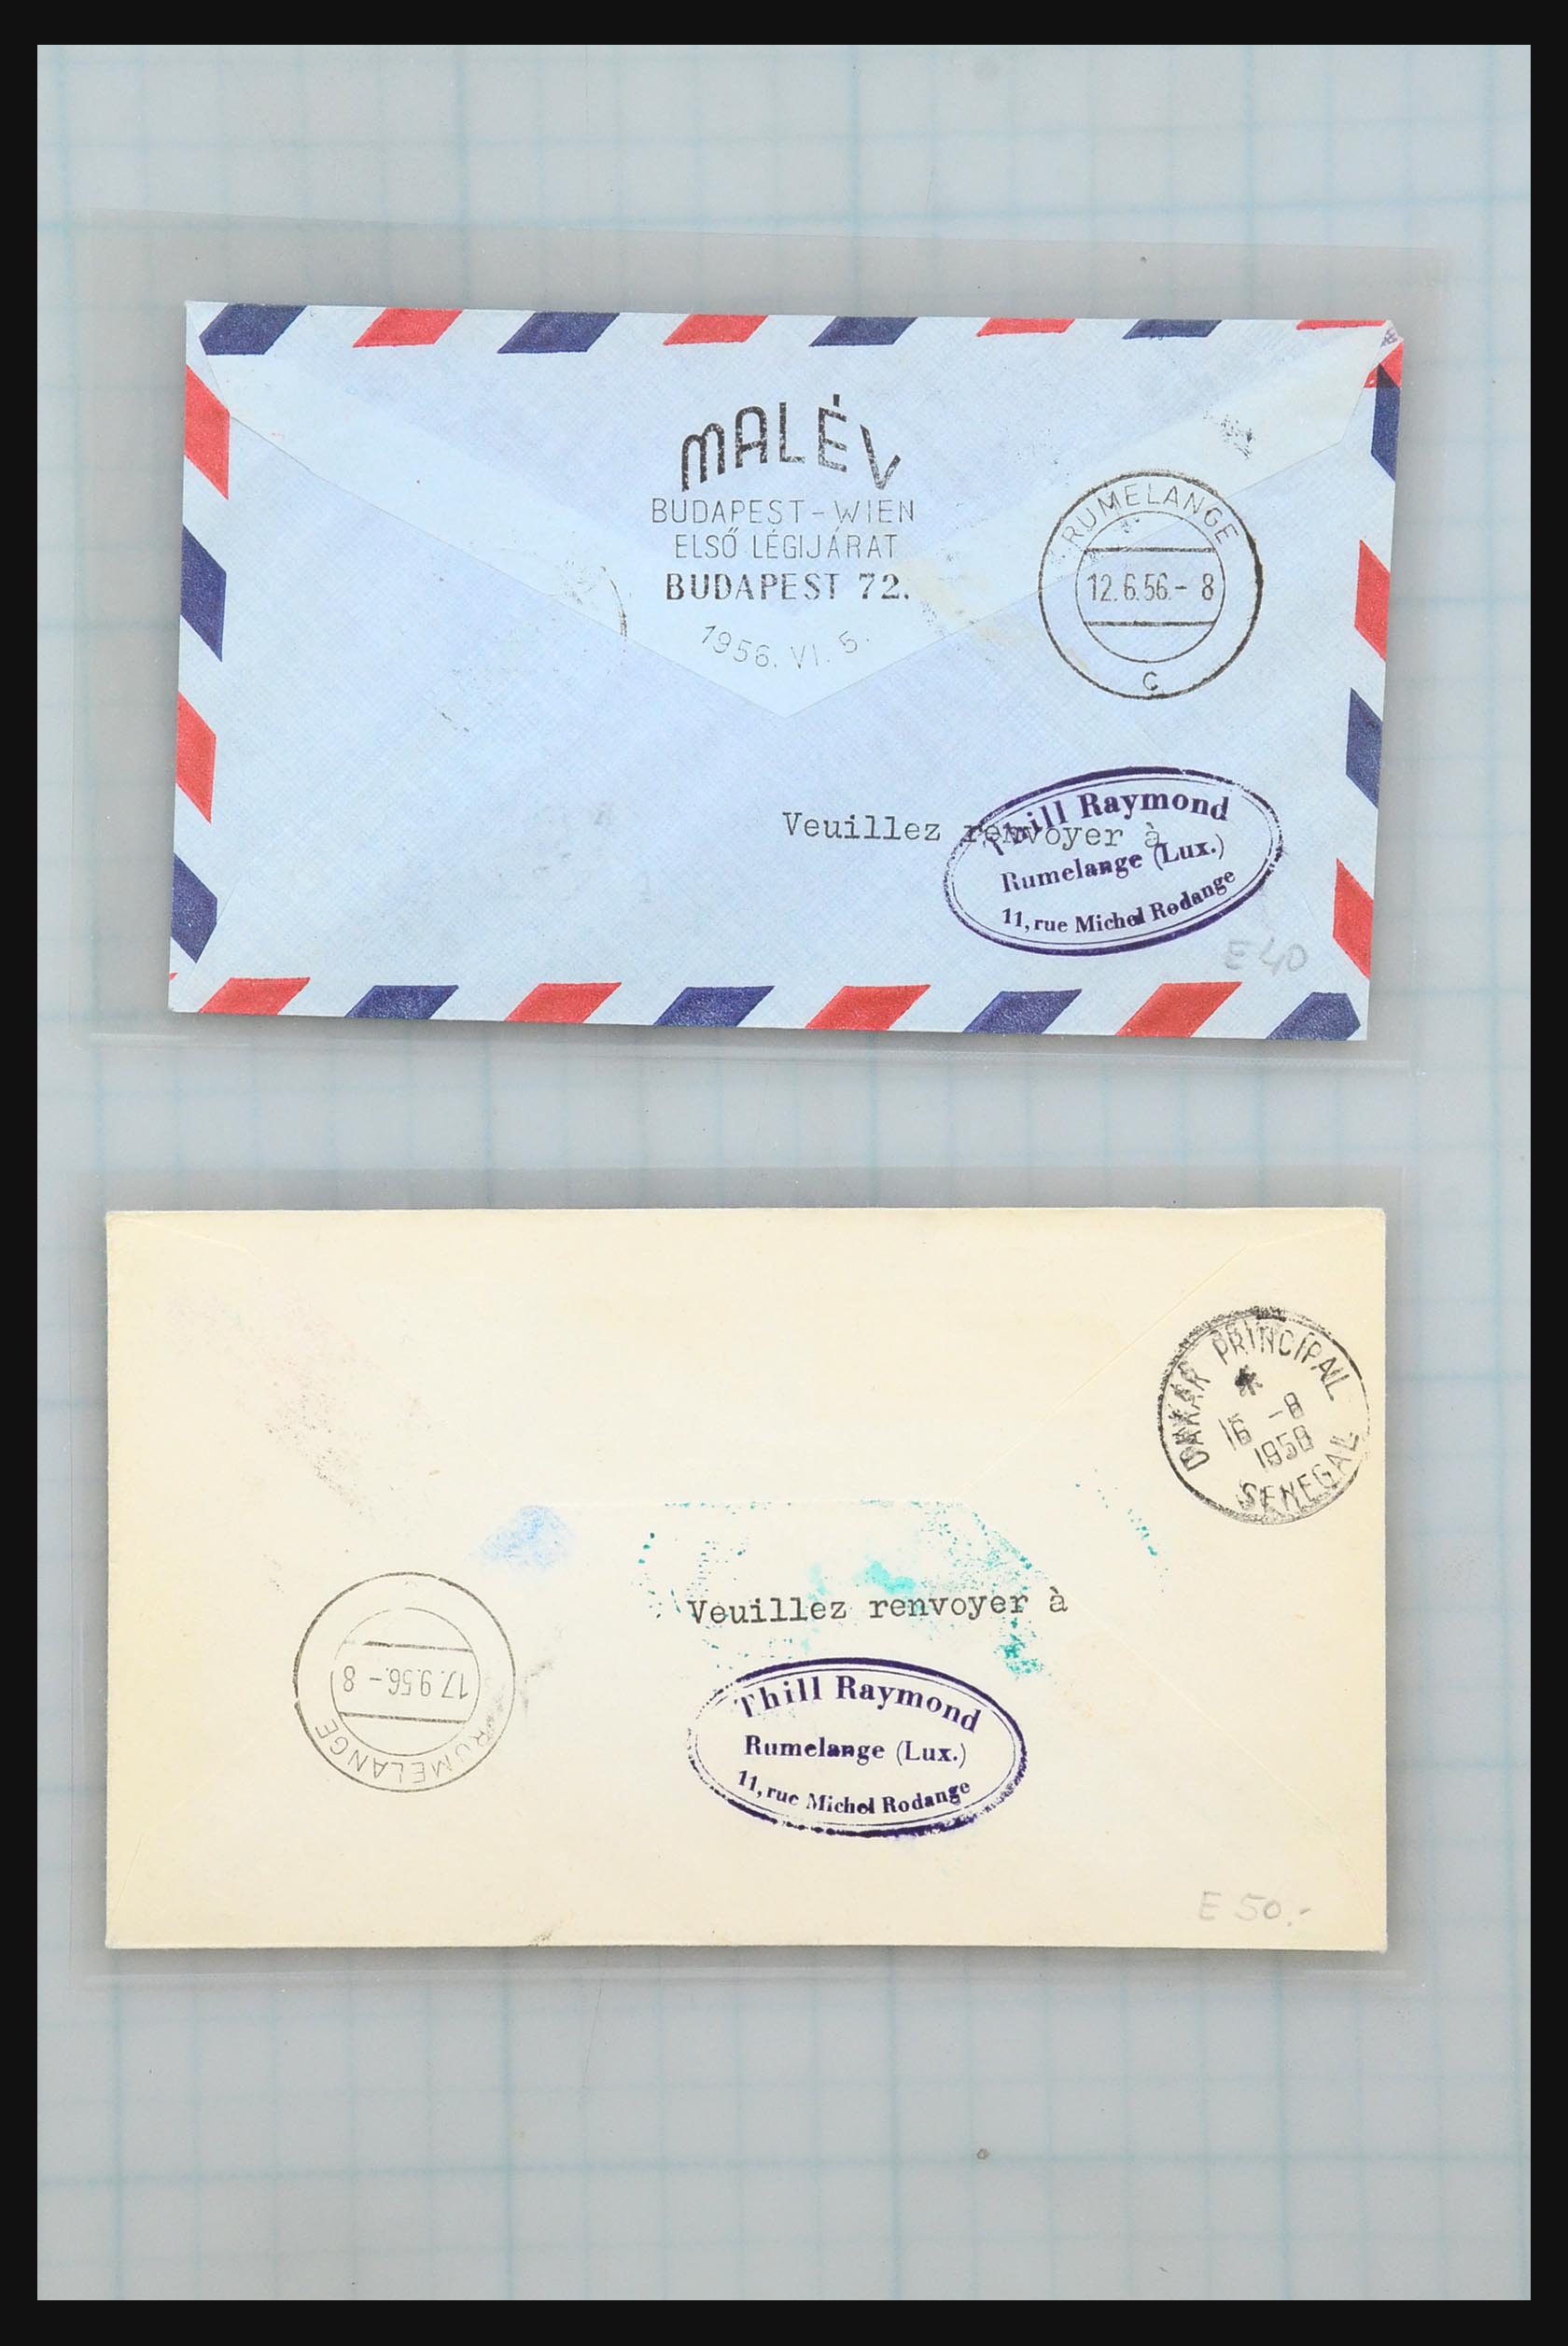 31358 076 - 31358 Portugal/Luxemburg/Griekenland brieven 1880-1960.